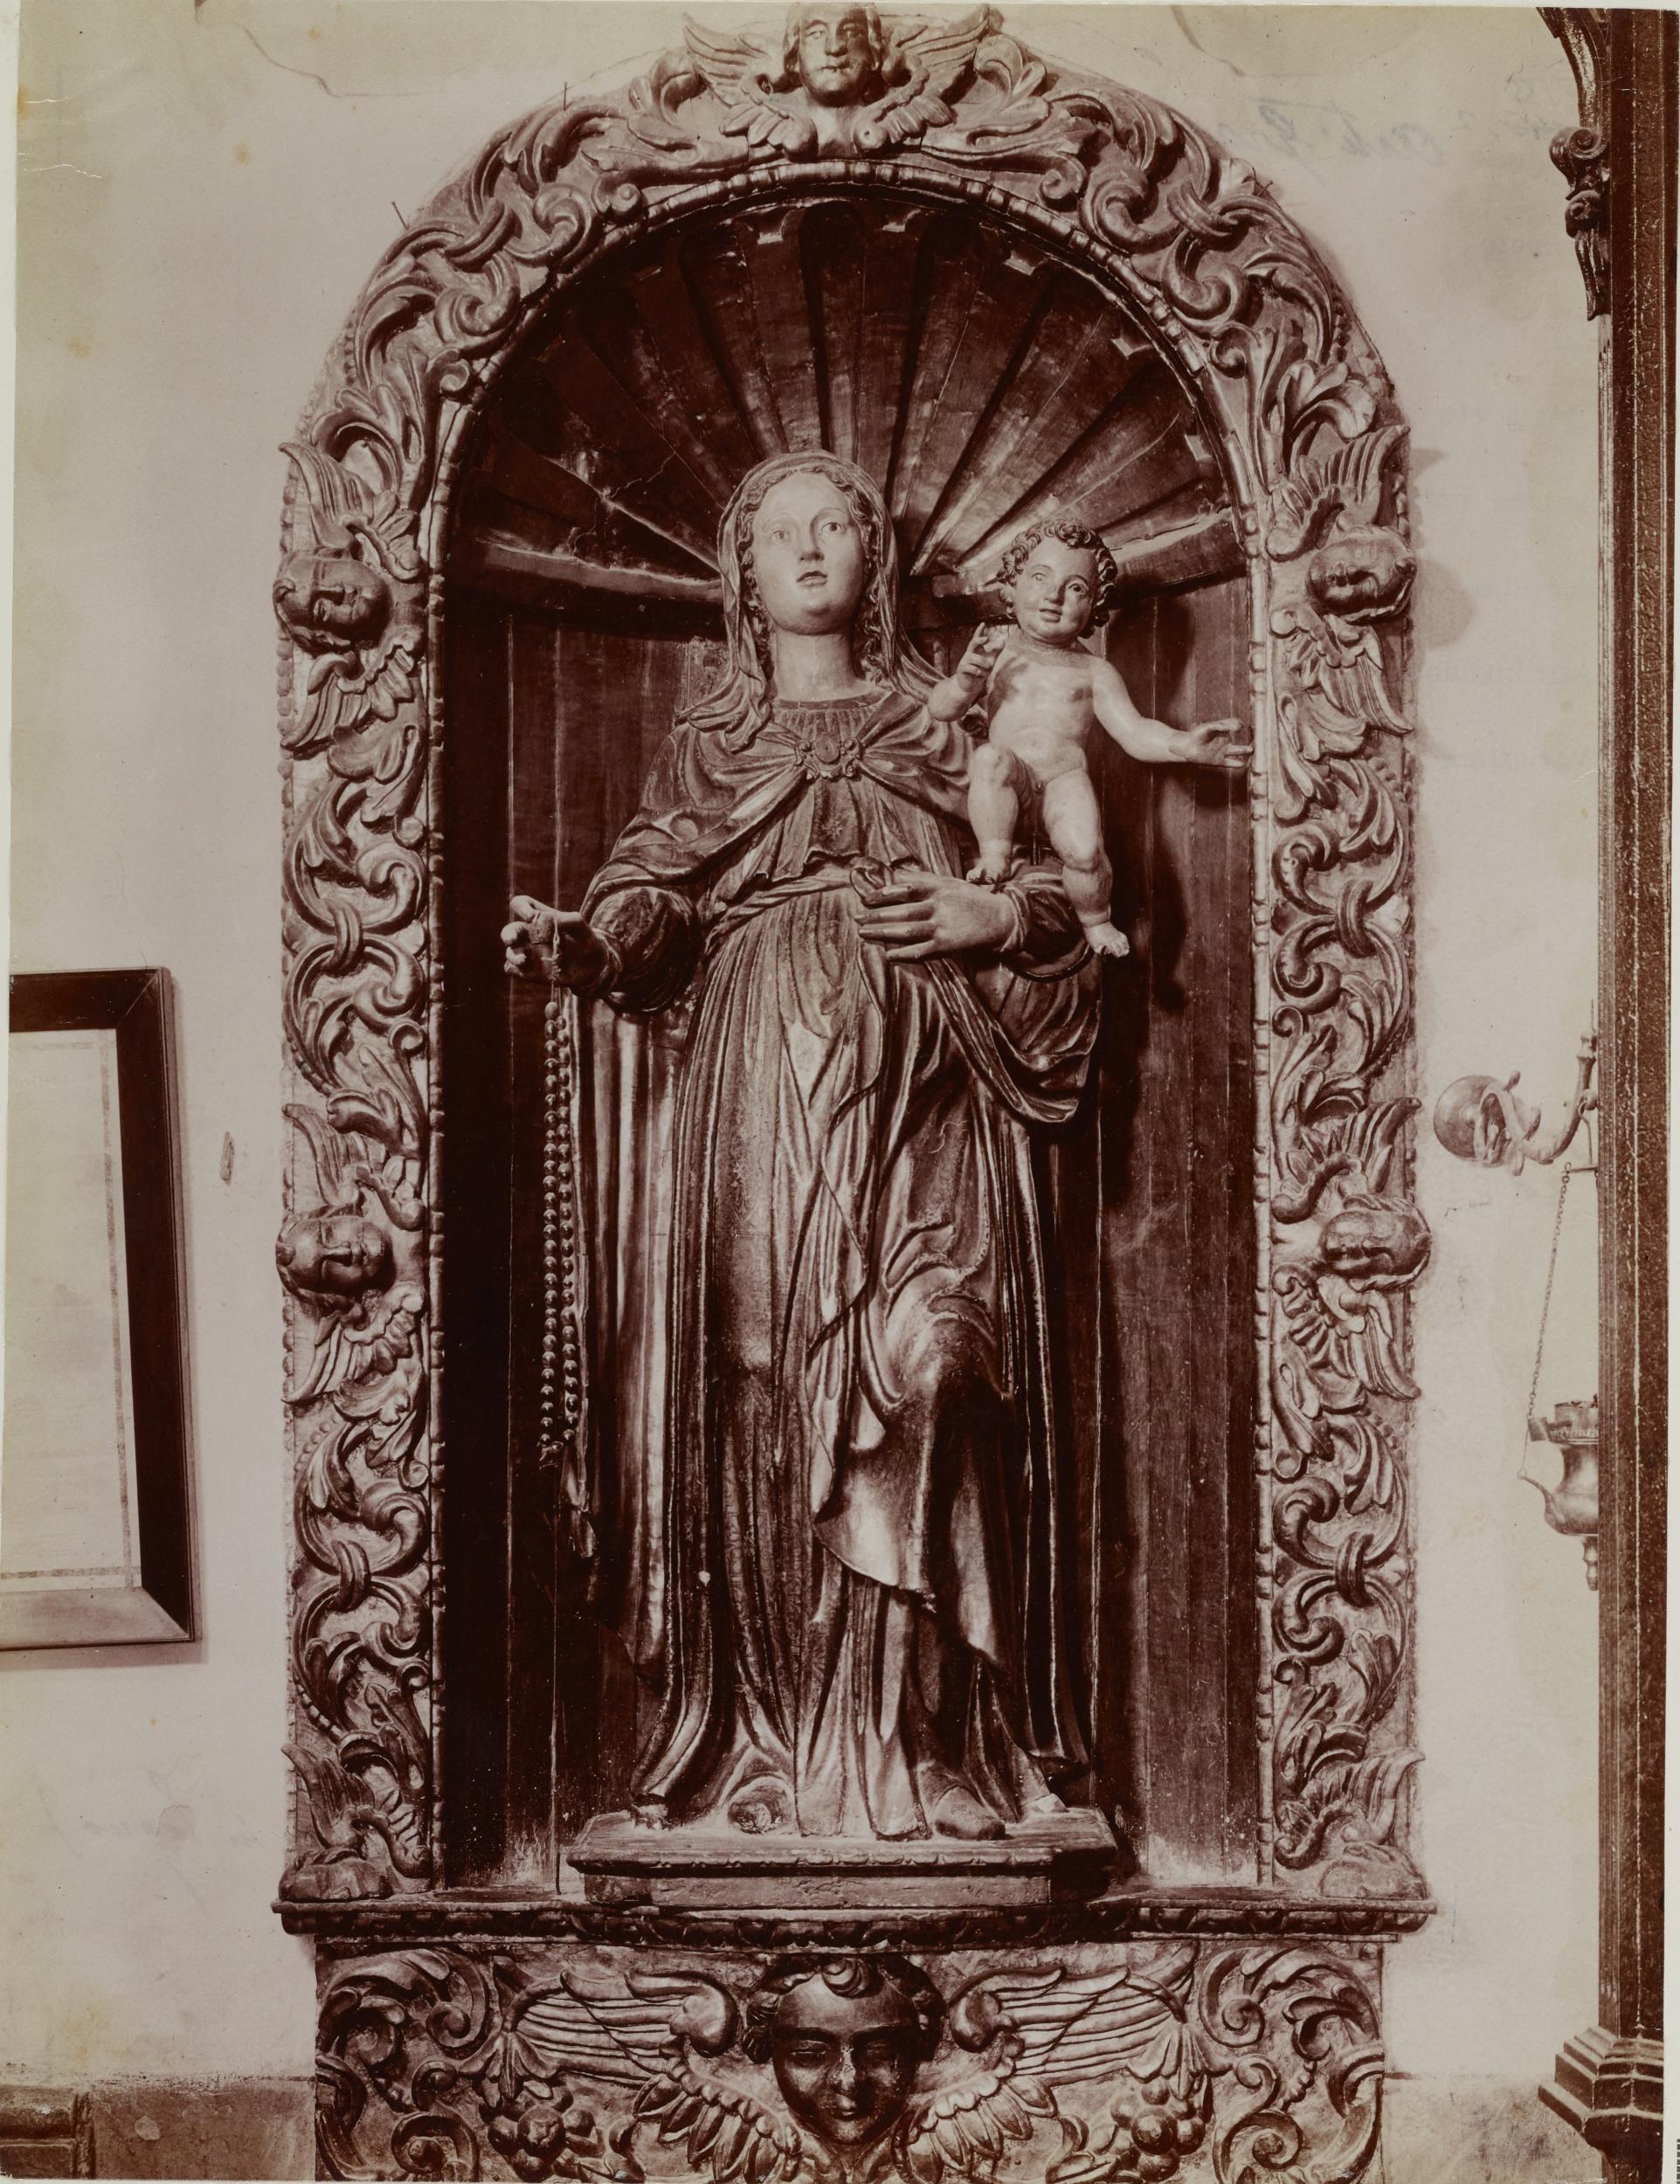 Fotografo non identificato, Andria - Chiesa di S. Domenico, la vergine col bambino, 1904-1915, albumina/carta, MPI131872